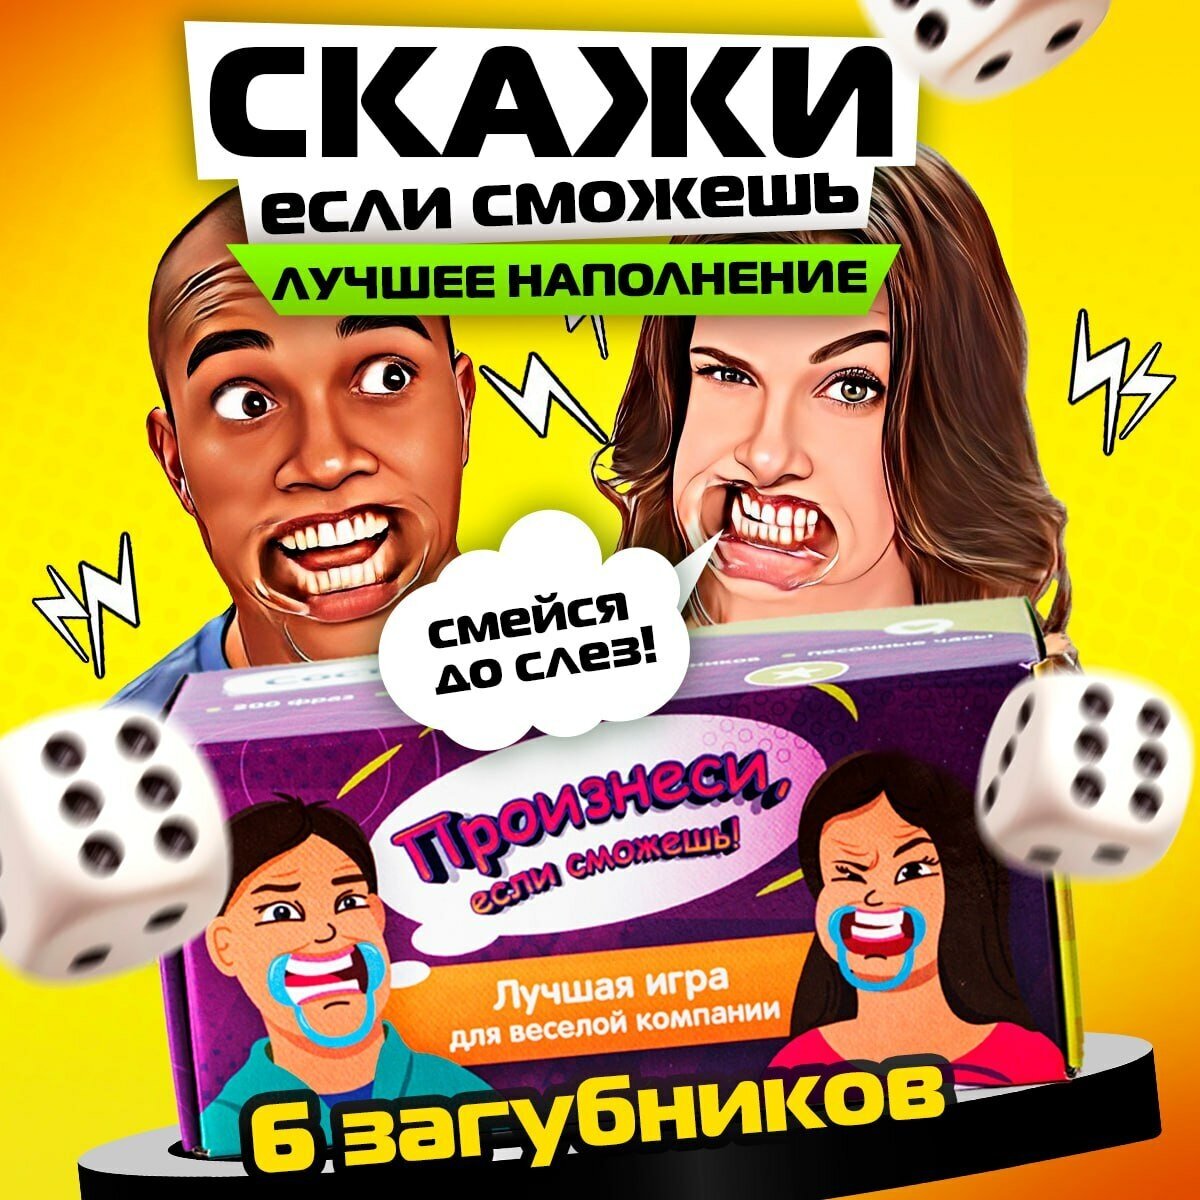 Скажи если сможешь настольная игра с загубниками — купить в интернет-магазине по низкой цене на Яндекс Маркете